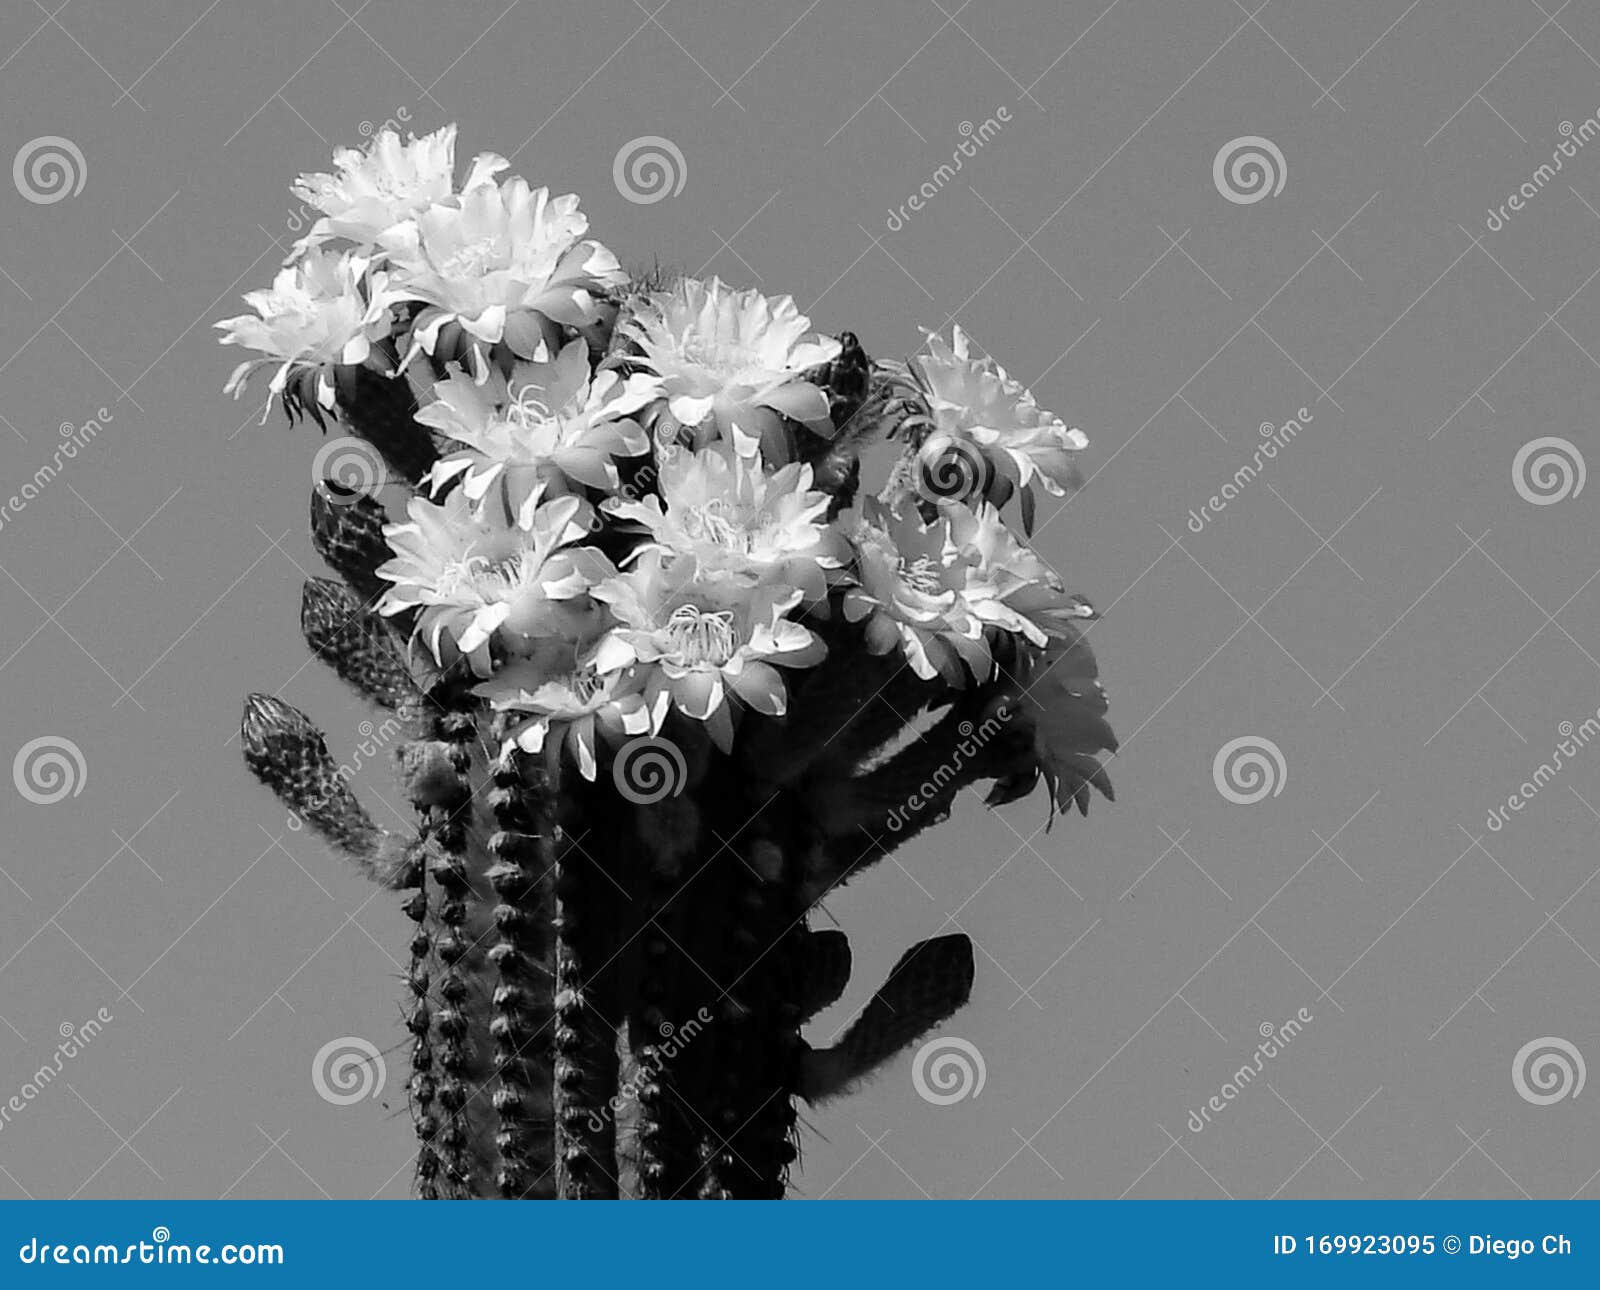 flores de cactus en blanco y negro